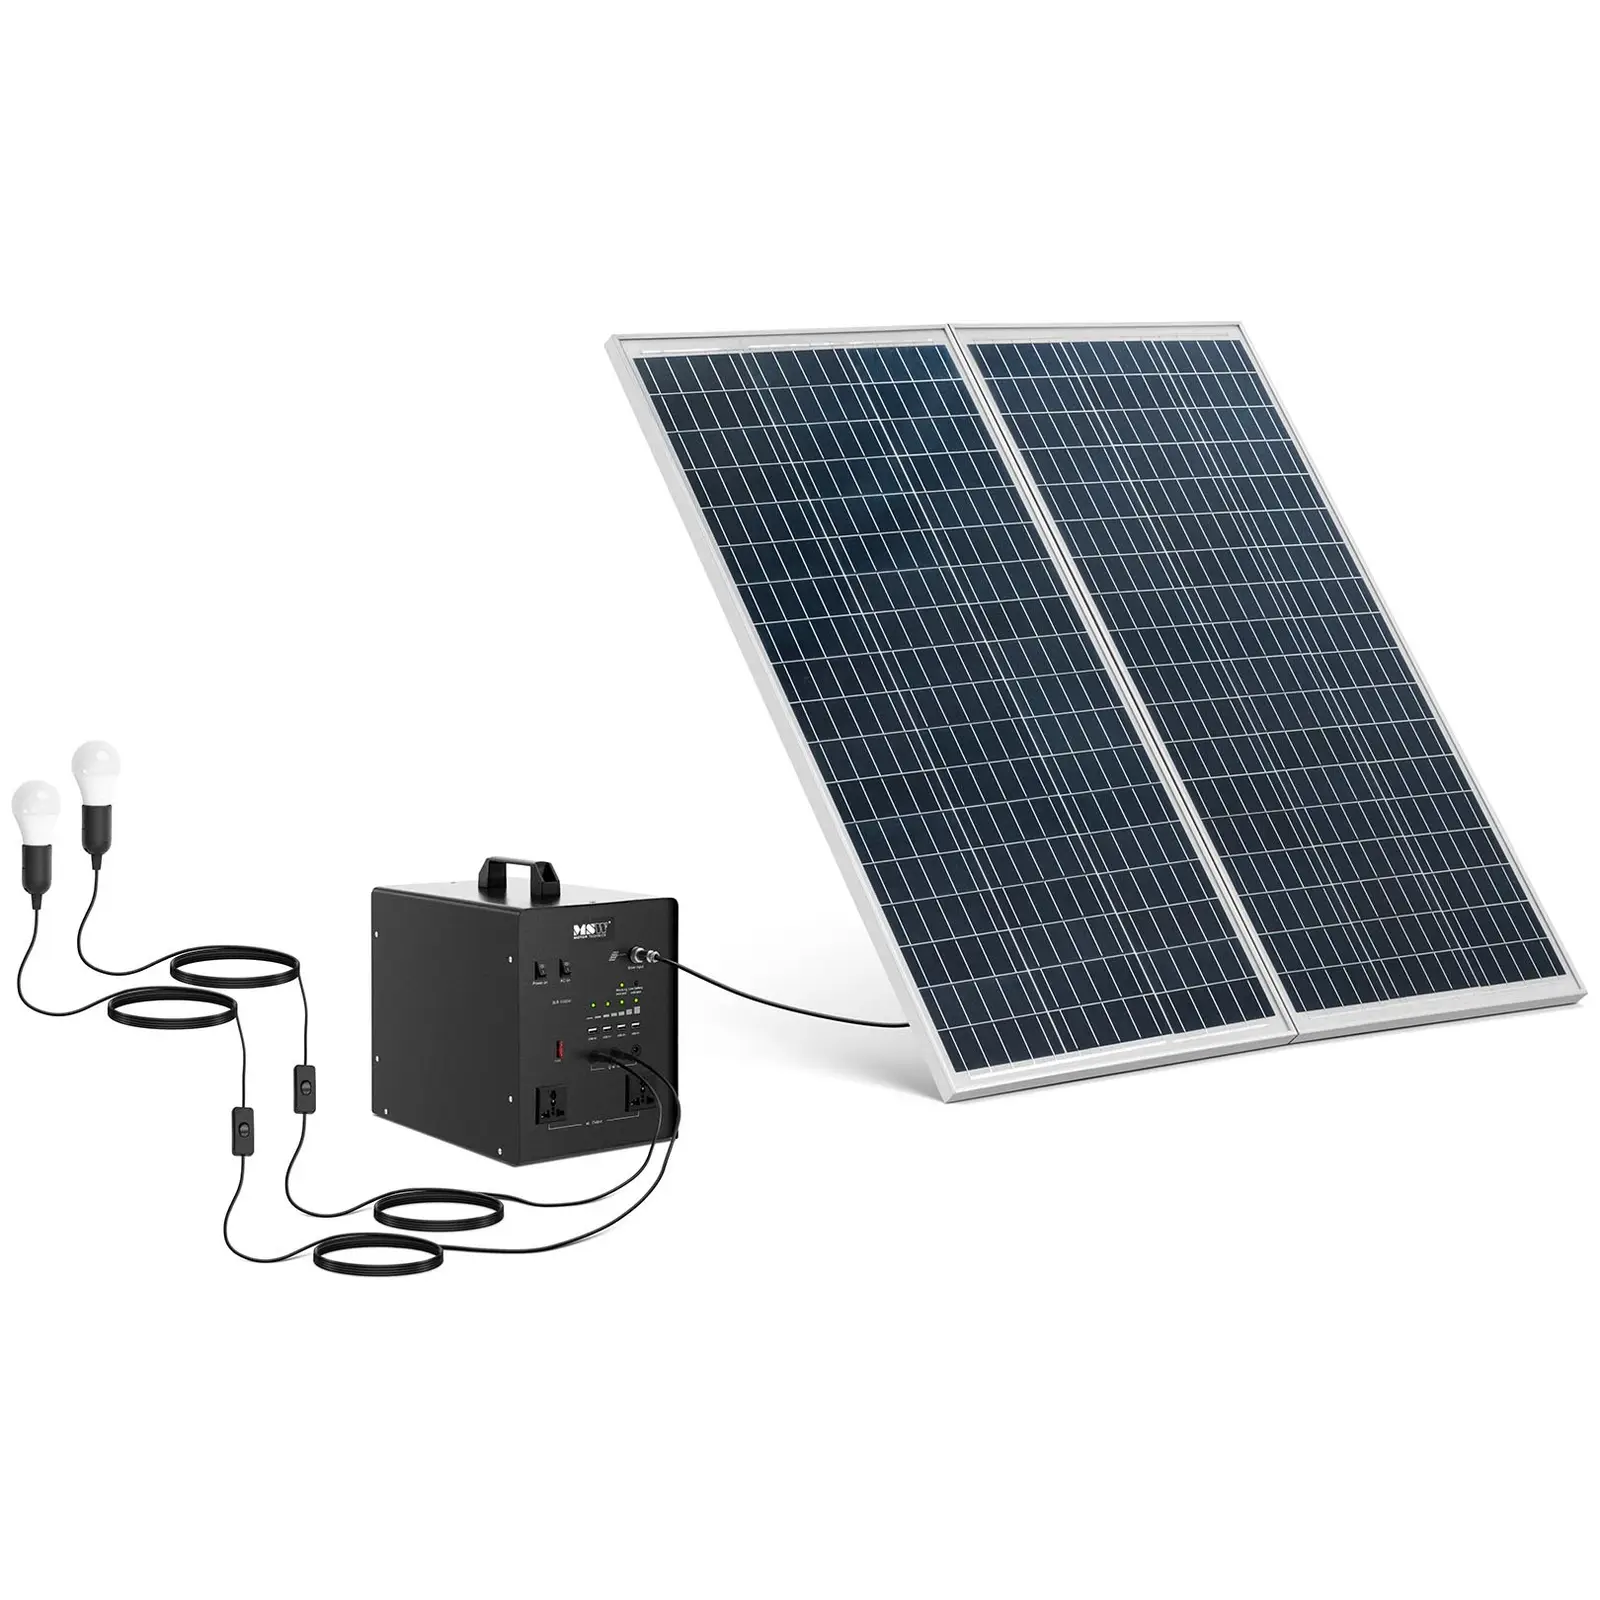 Centrale elettrica portatile con pannello solare e inverter - 1000 W - 5 / 12 /230 V - 2 luci LED